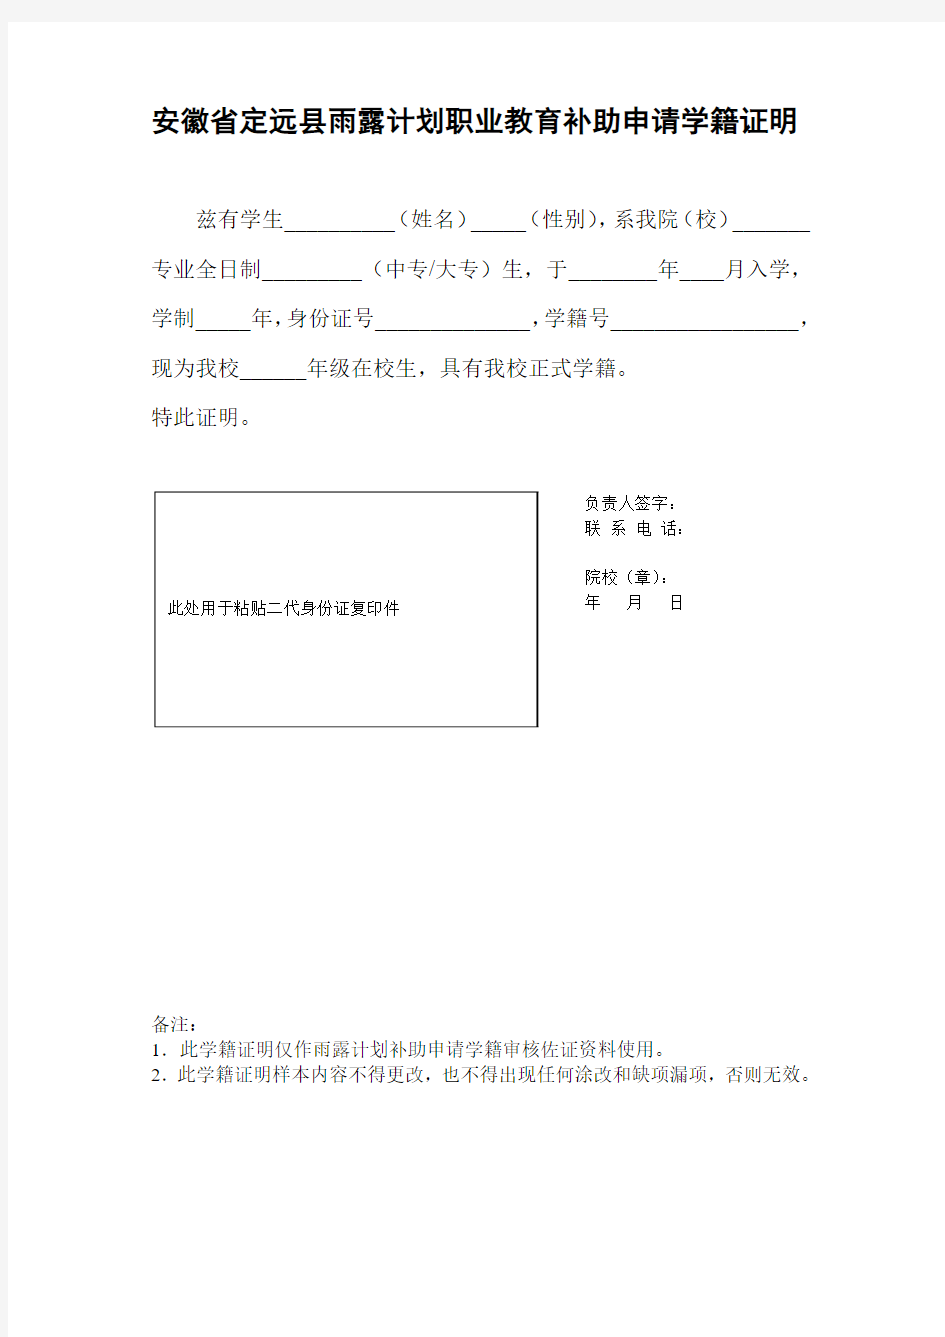 安徽省定远县雨露计划职业教育补助申请学籍证明